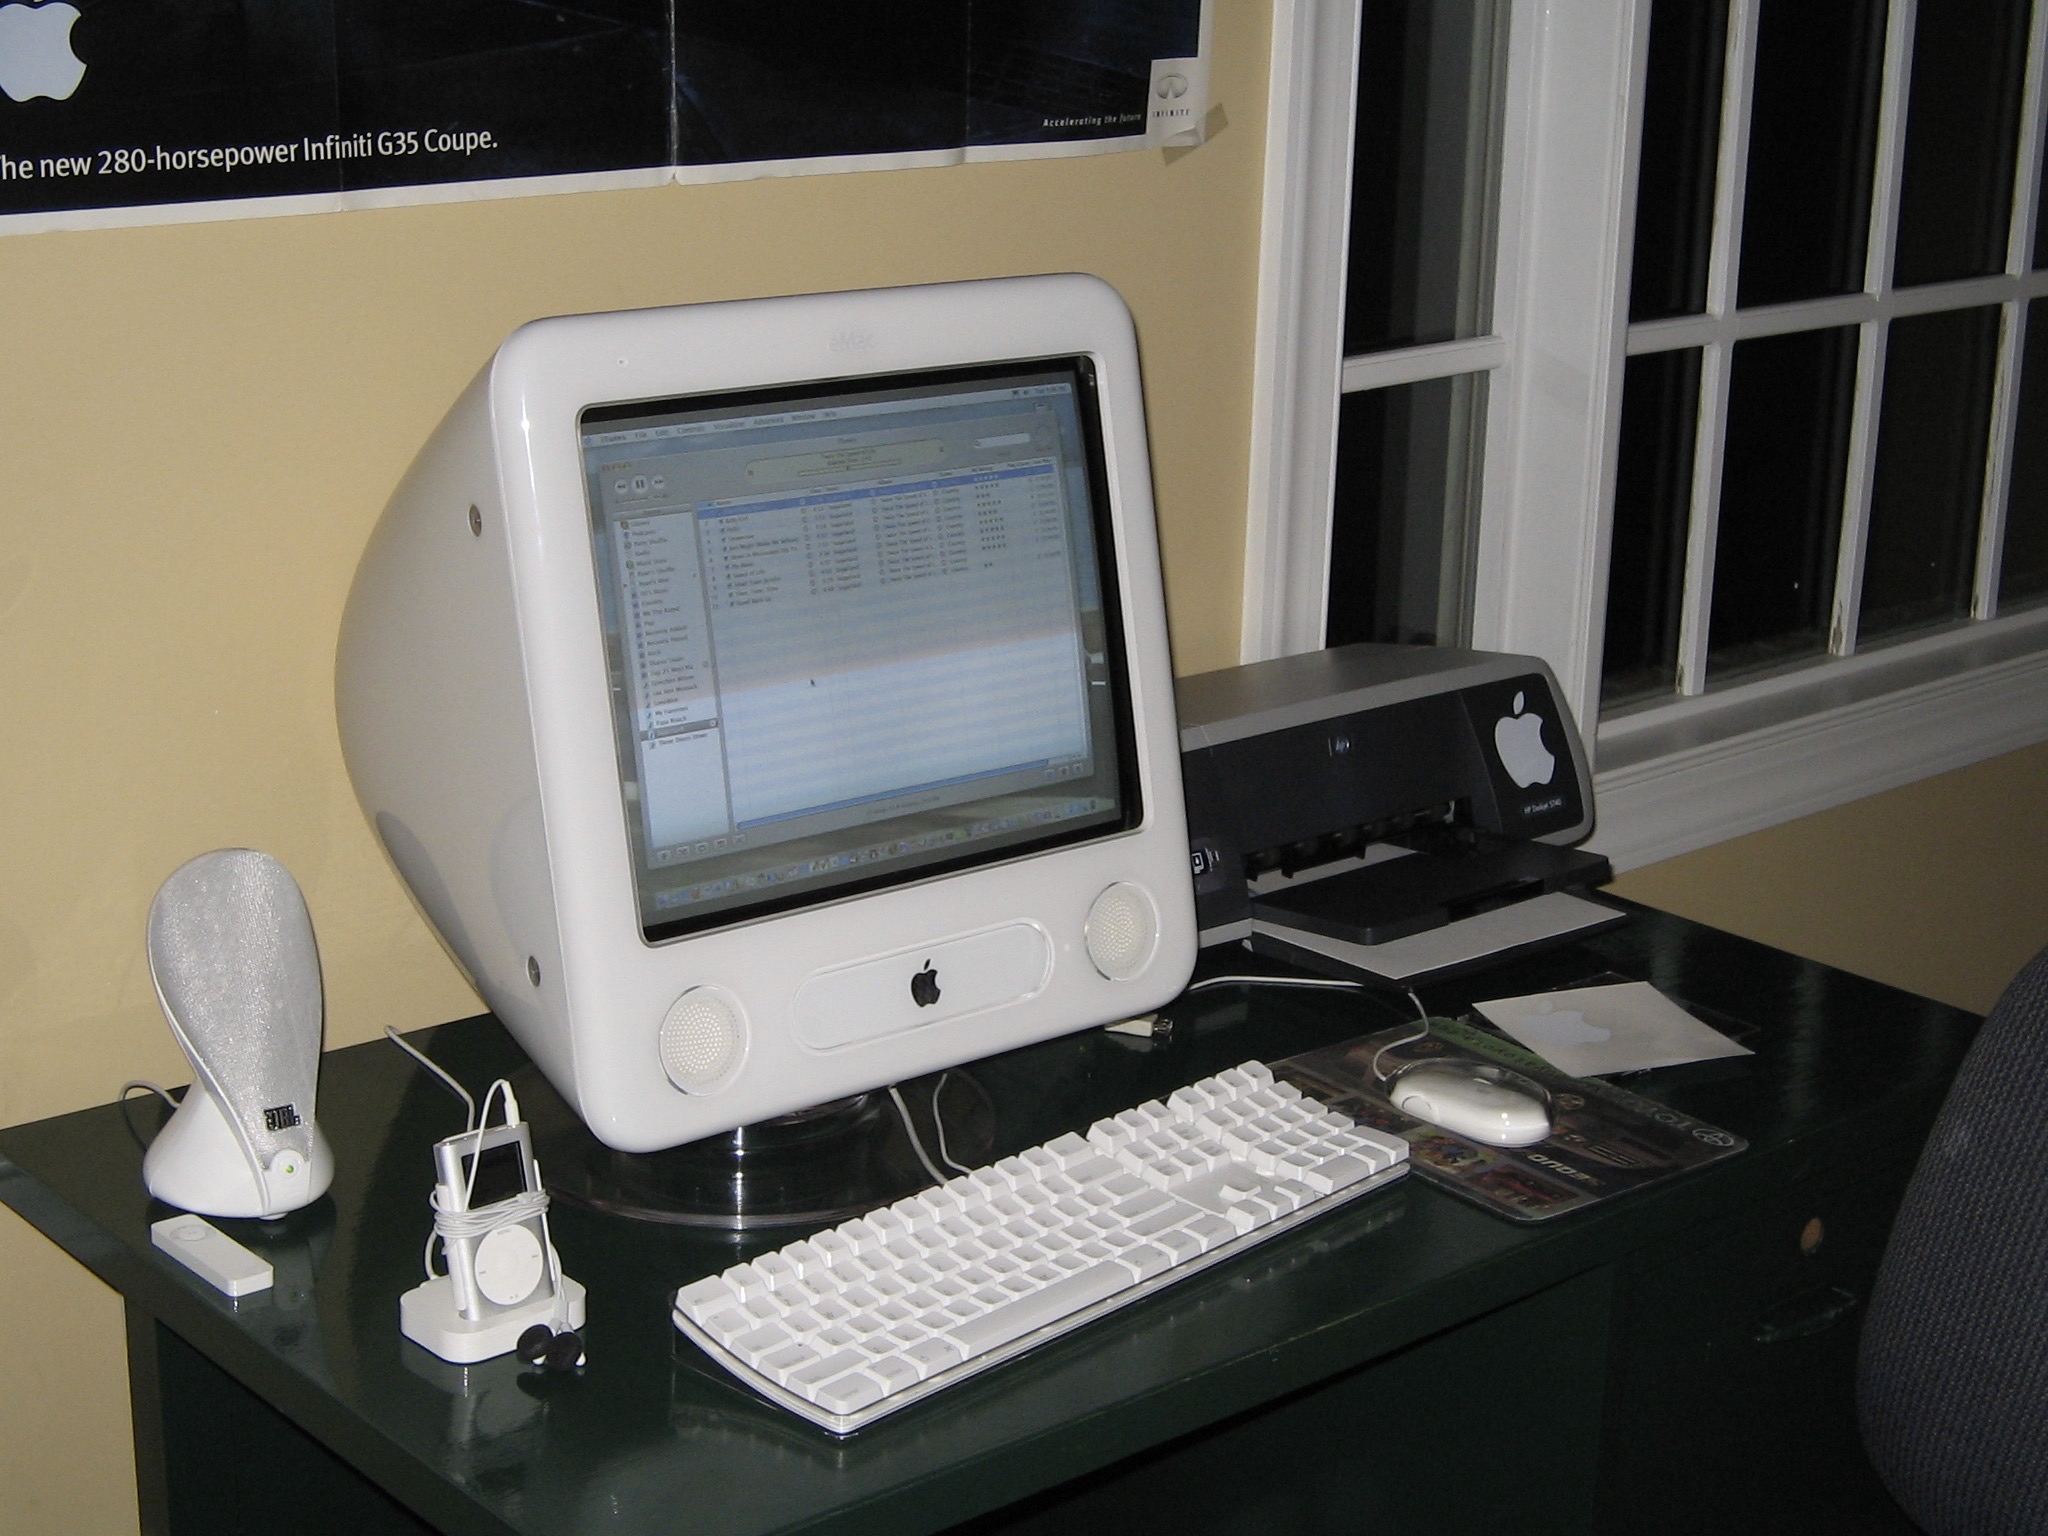 Takto vyzerala kedysi lacnejšia varianta počítaču iMac, ktorá niesla názov eMac - svetapple.sk